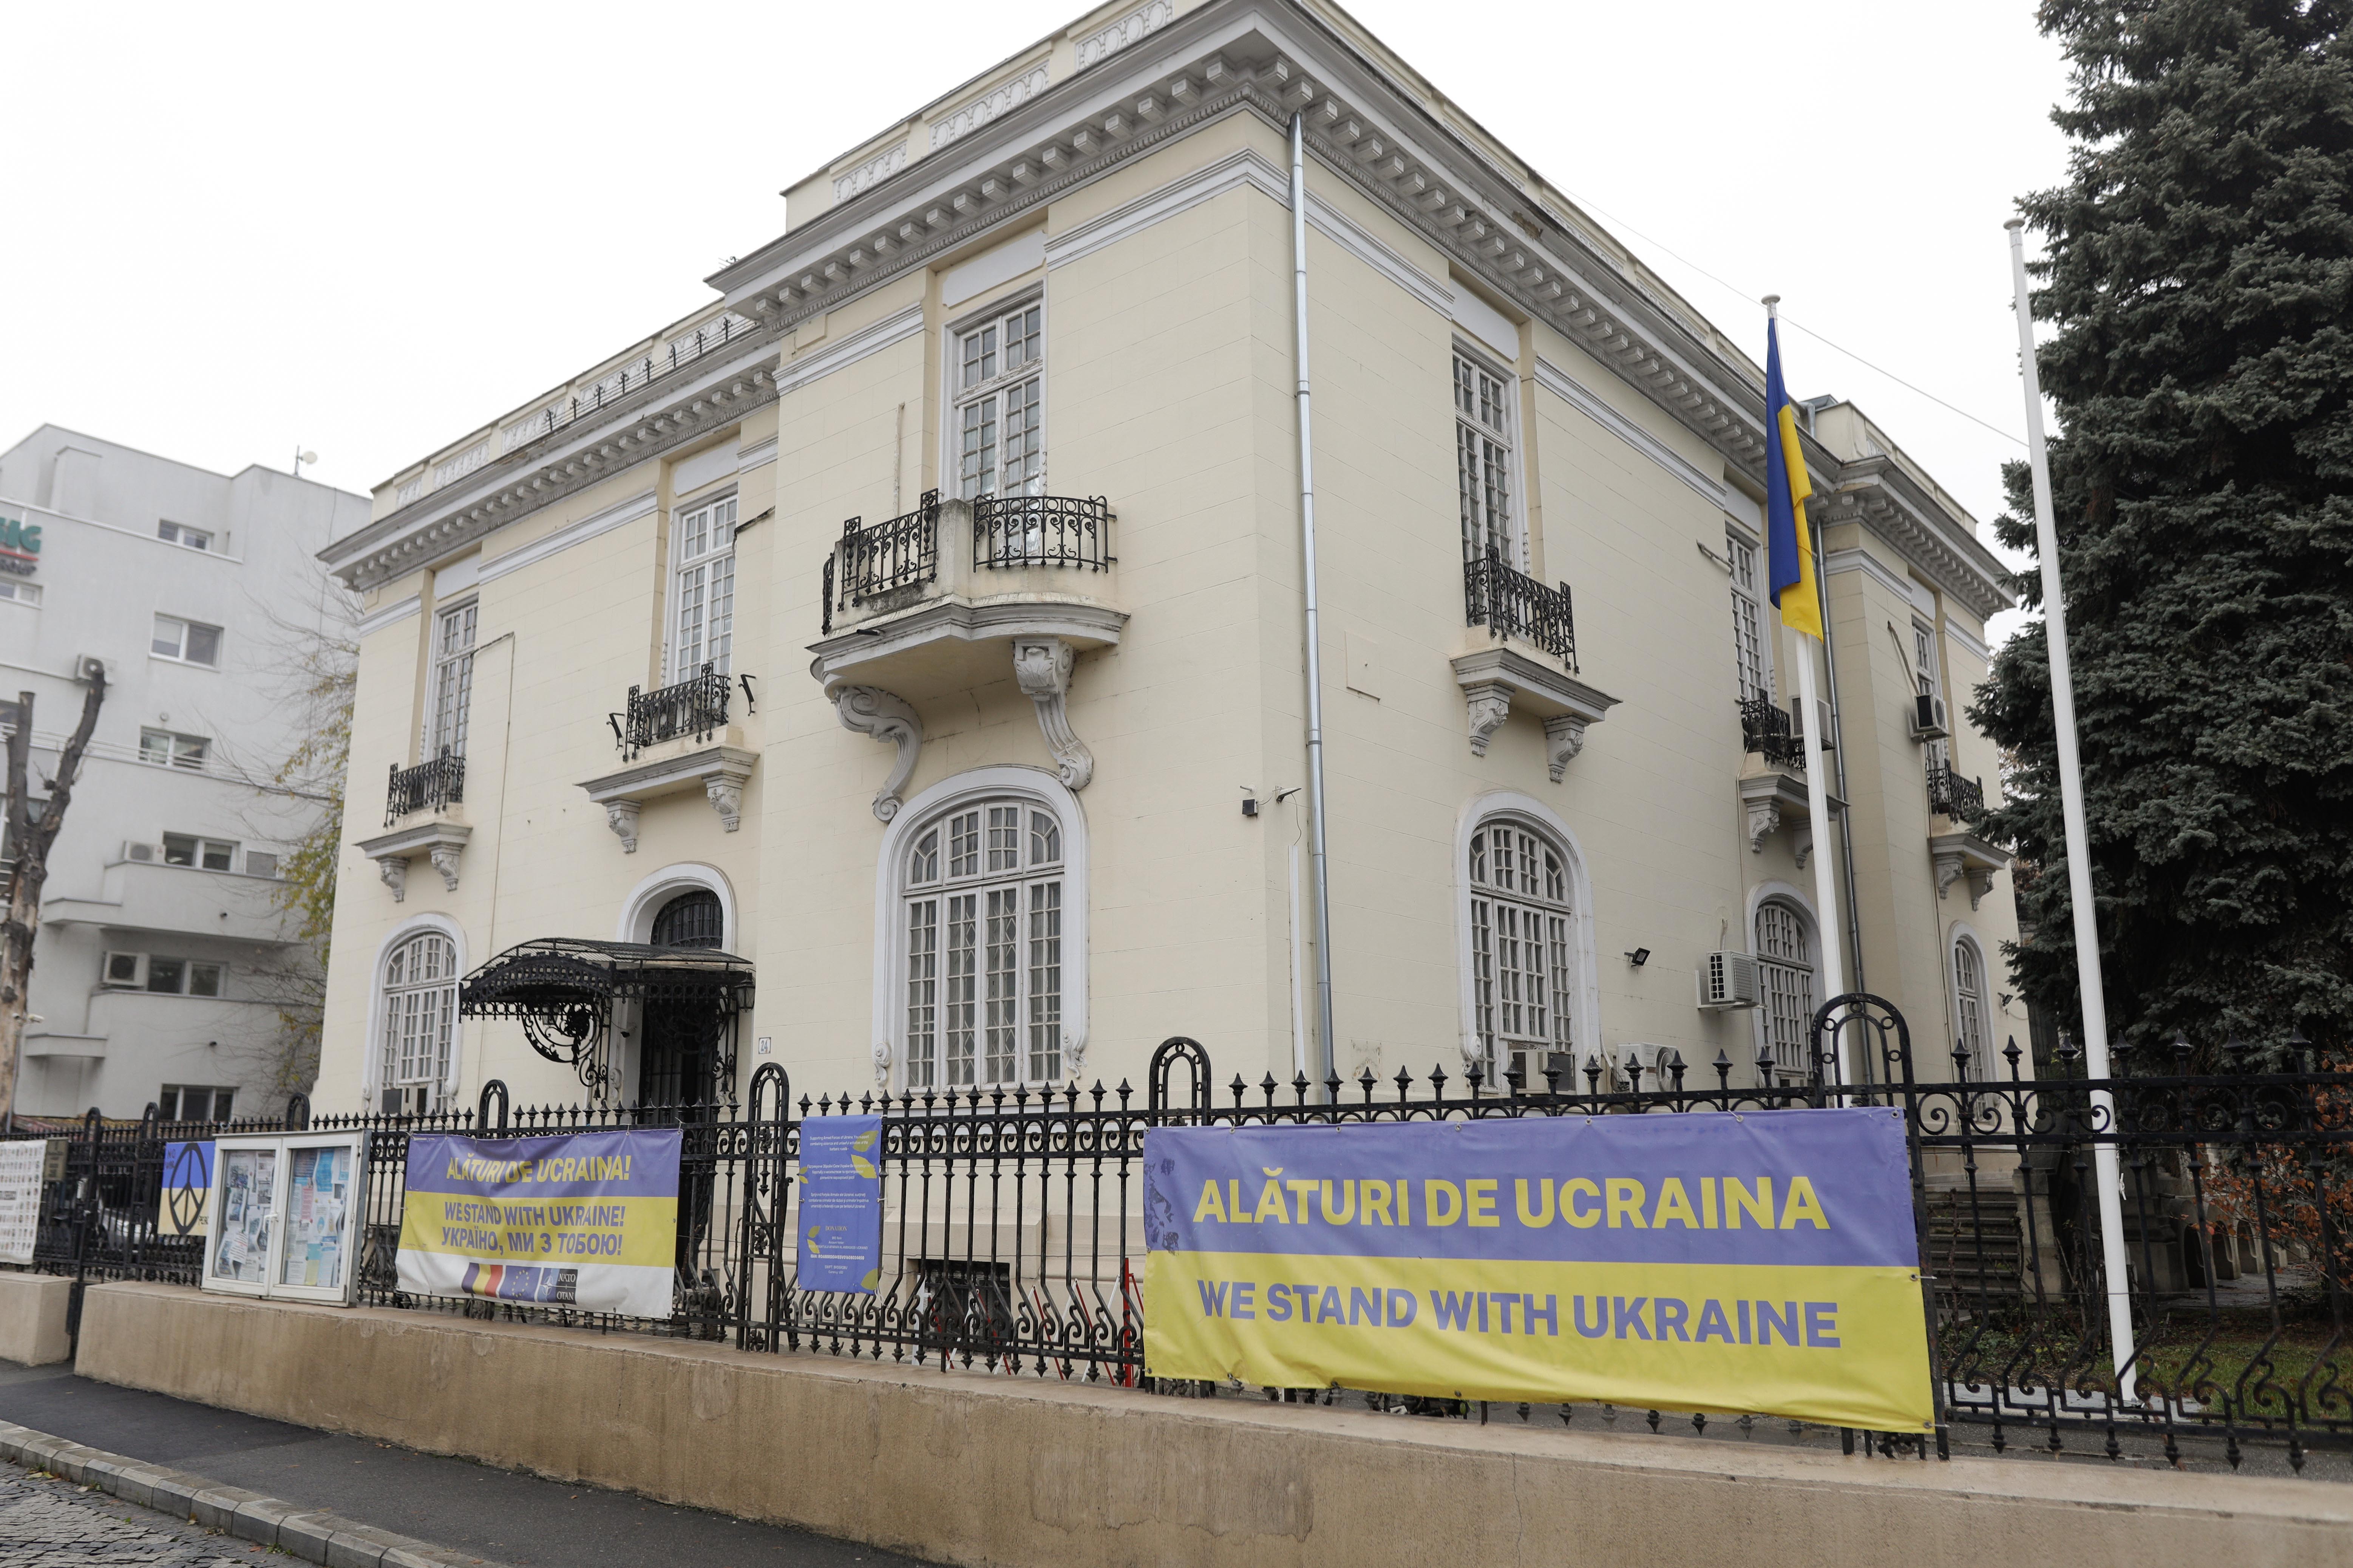 Plicuri suspecte primite de Ambasada Ucrainei de la București. Campanie de atacuri în toată lumea. Reacția Ucrainei FOTO - Imaginea 7